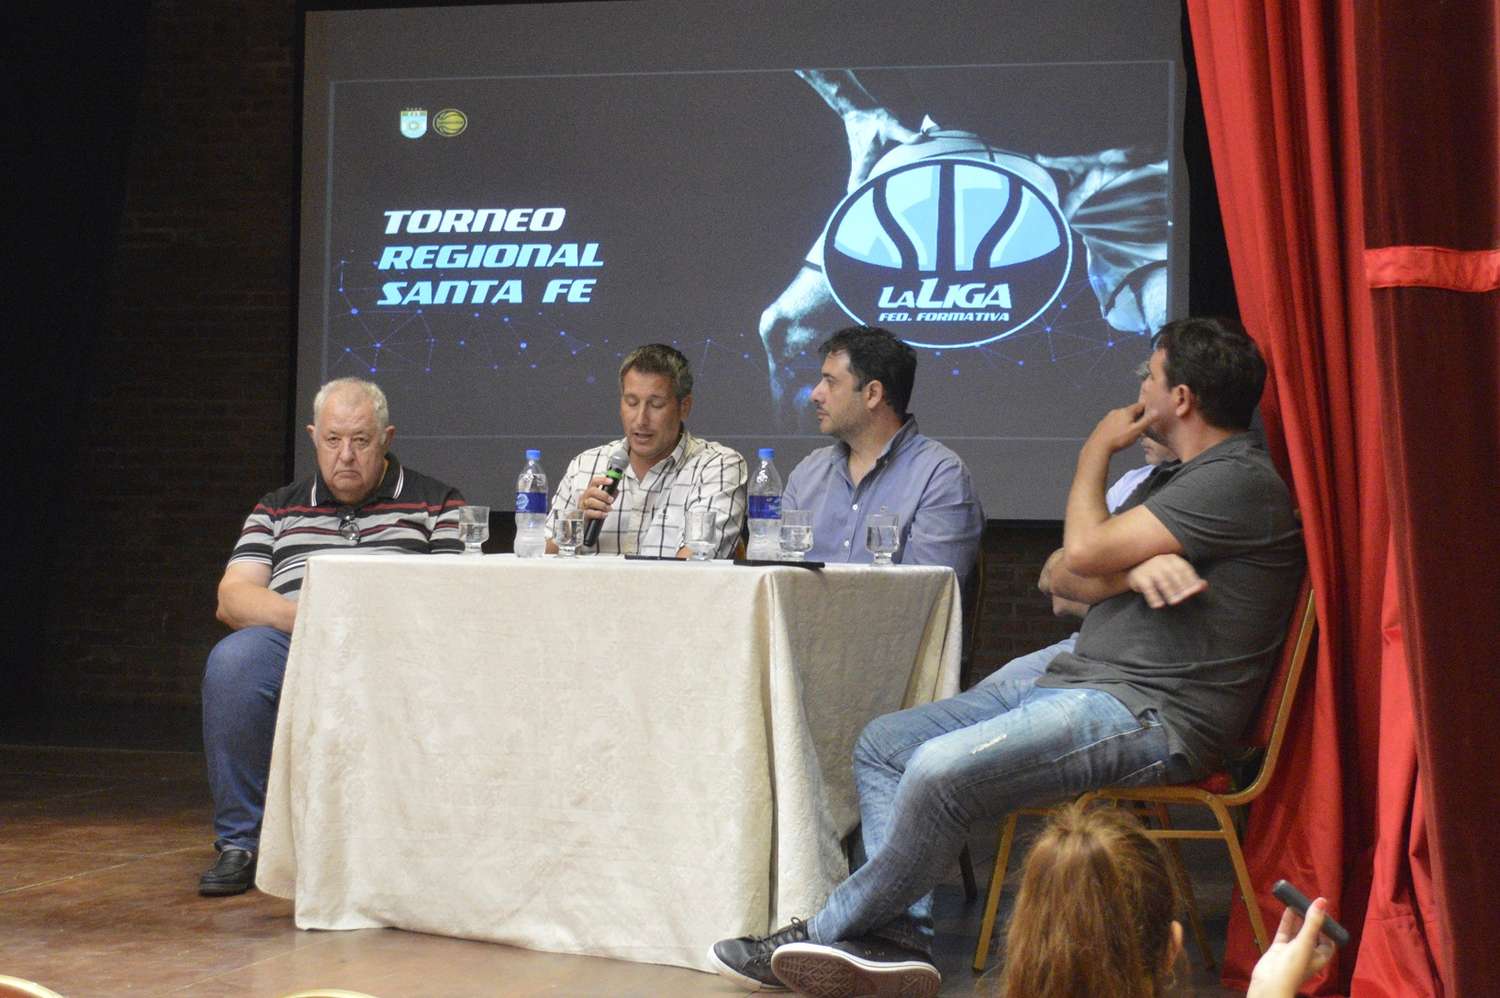 Dirigentes de la Confederación Argentina en la Conferencia para oficializar los torneos. A la izquierda, el venadense Patricio López, integrante de la misma.